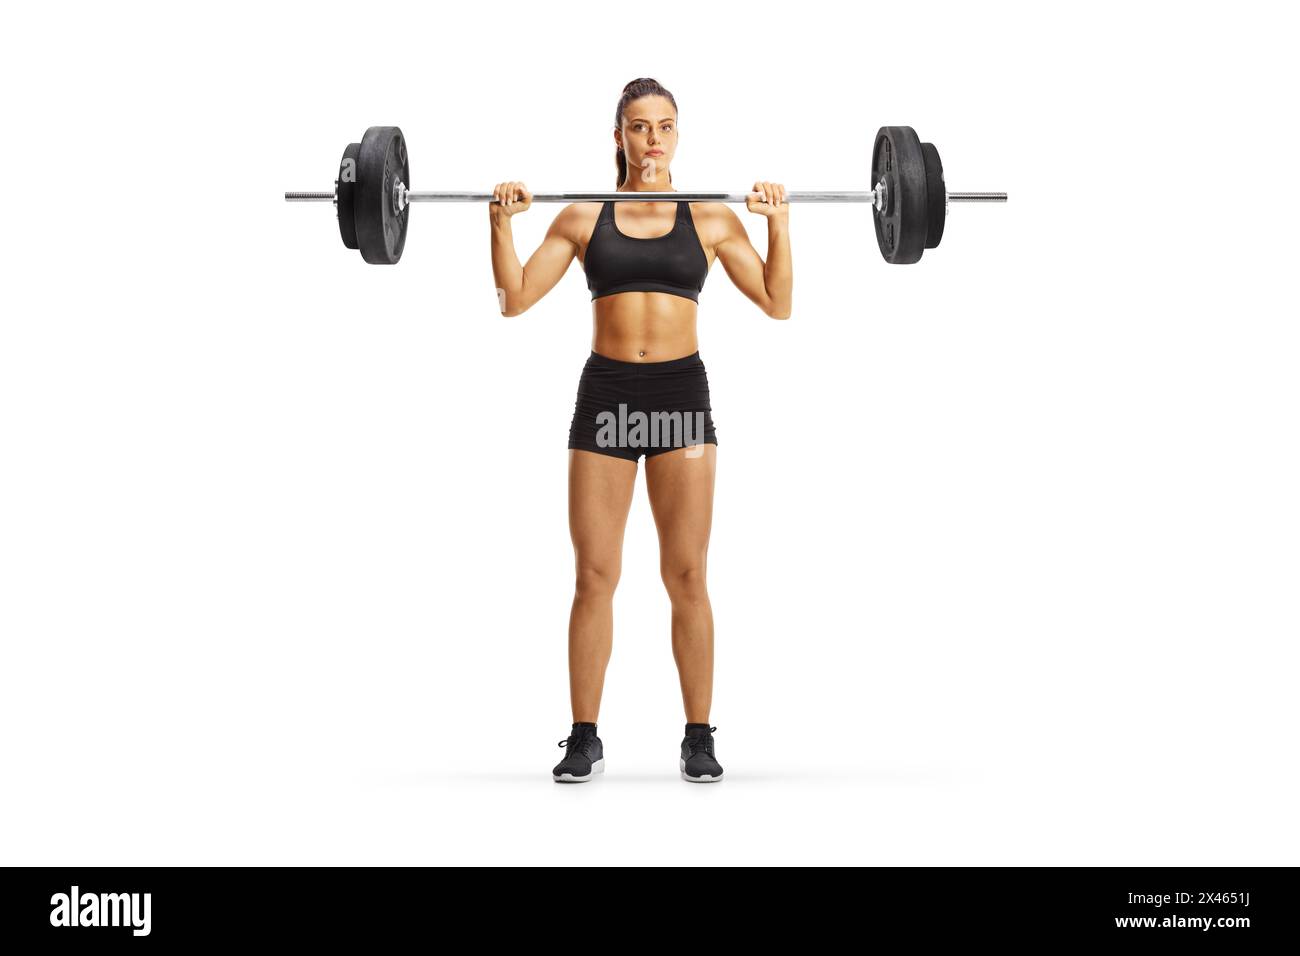 Junge Frau, die Gewichtstraining isoliert auf weißem Hintergrund ausübt, Bodybuilding-Konzept Stockfoto